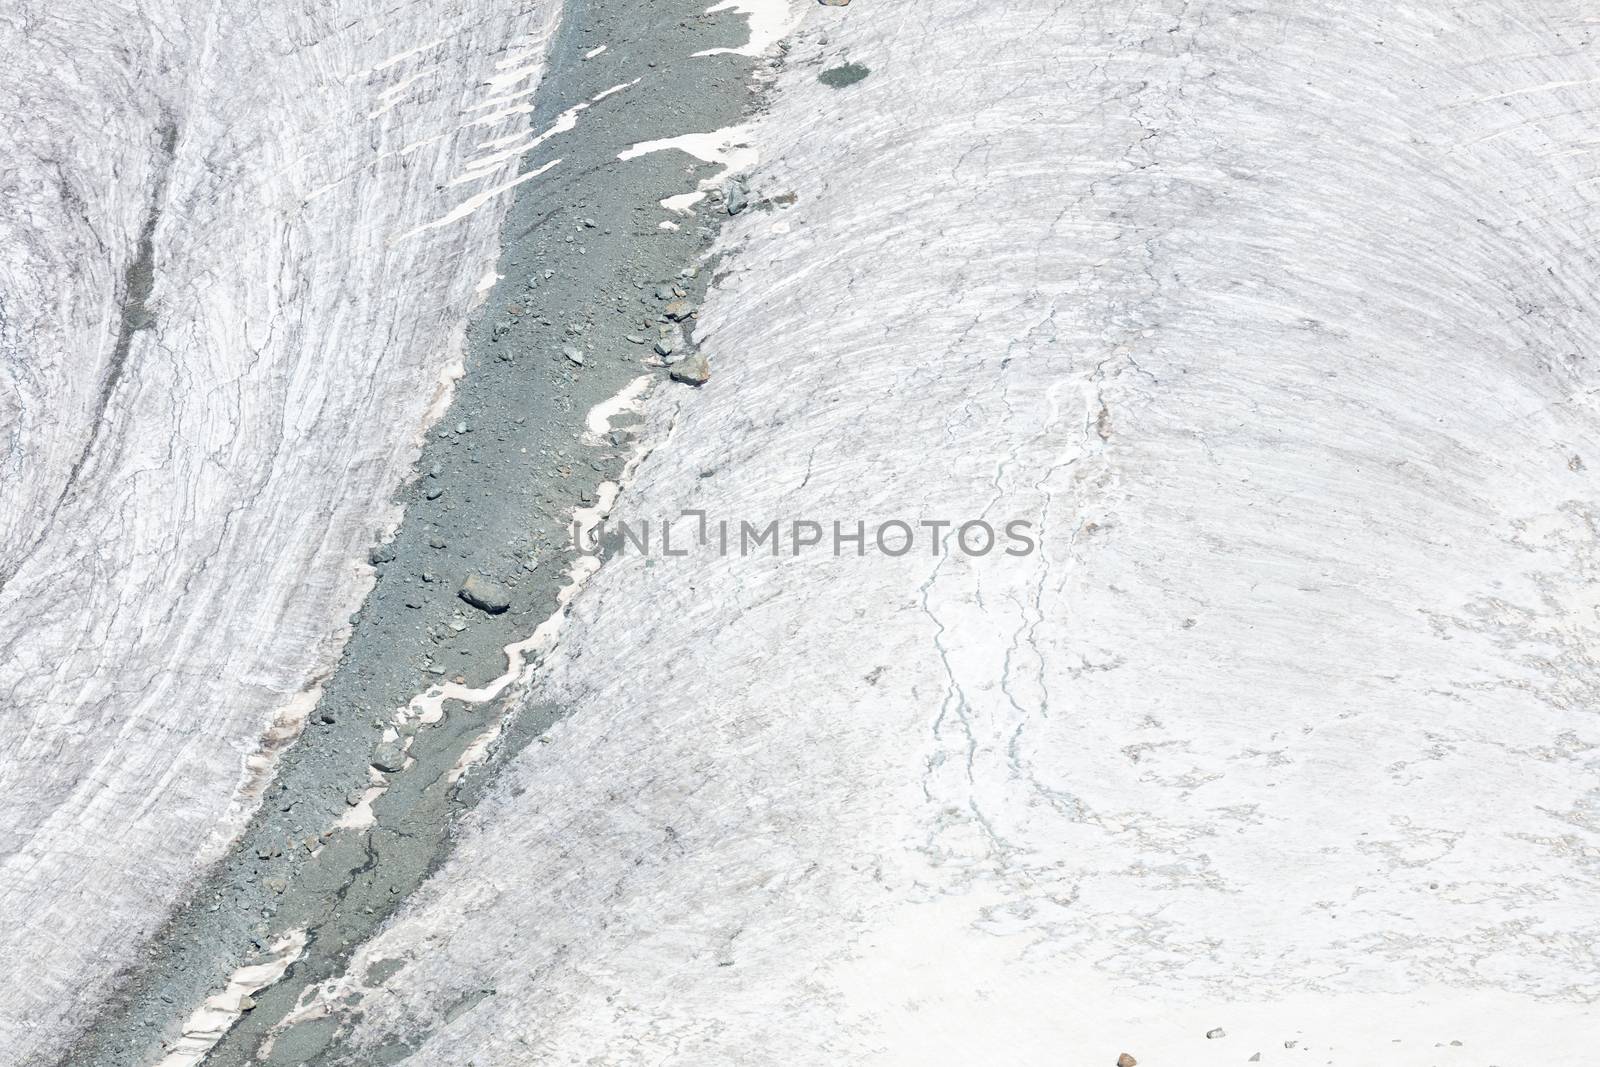 Closeup of a glacier in the Alps